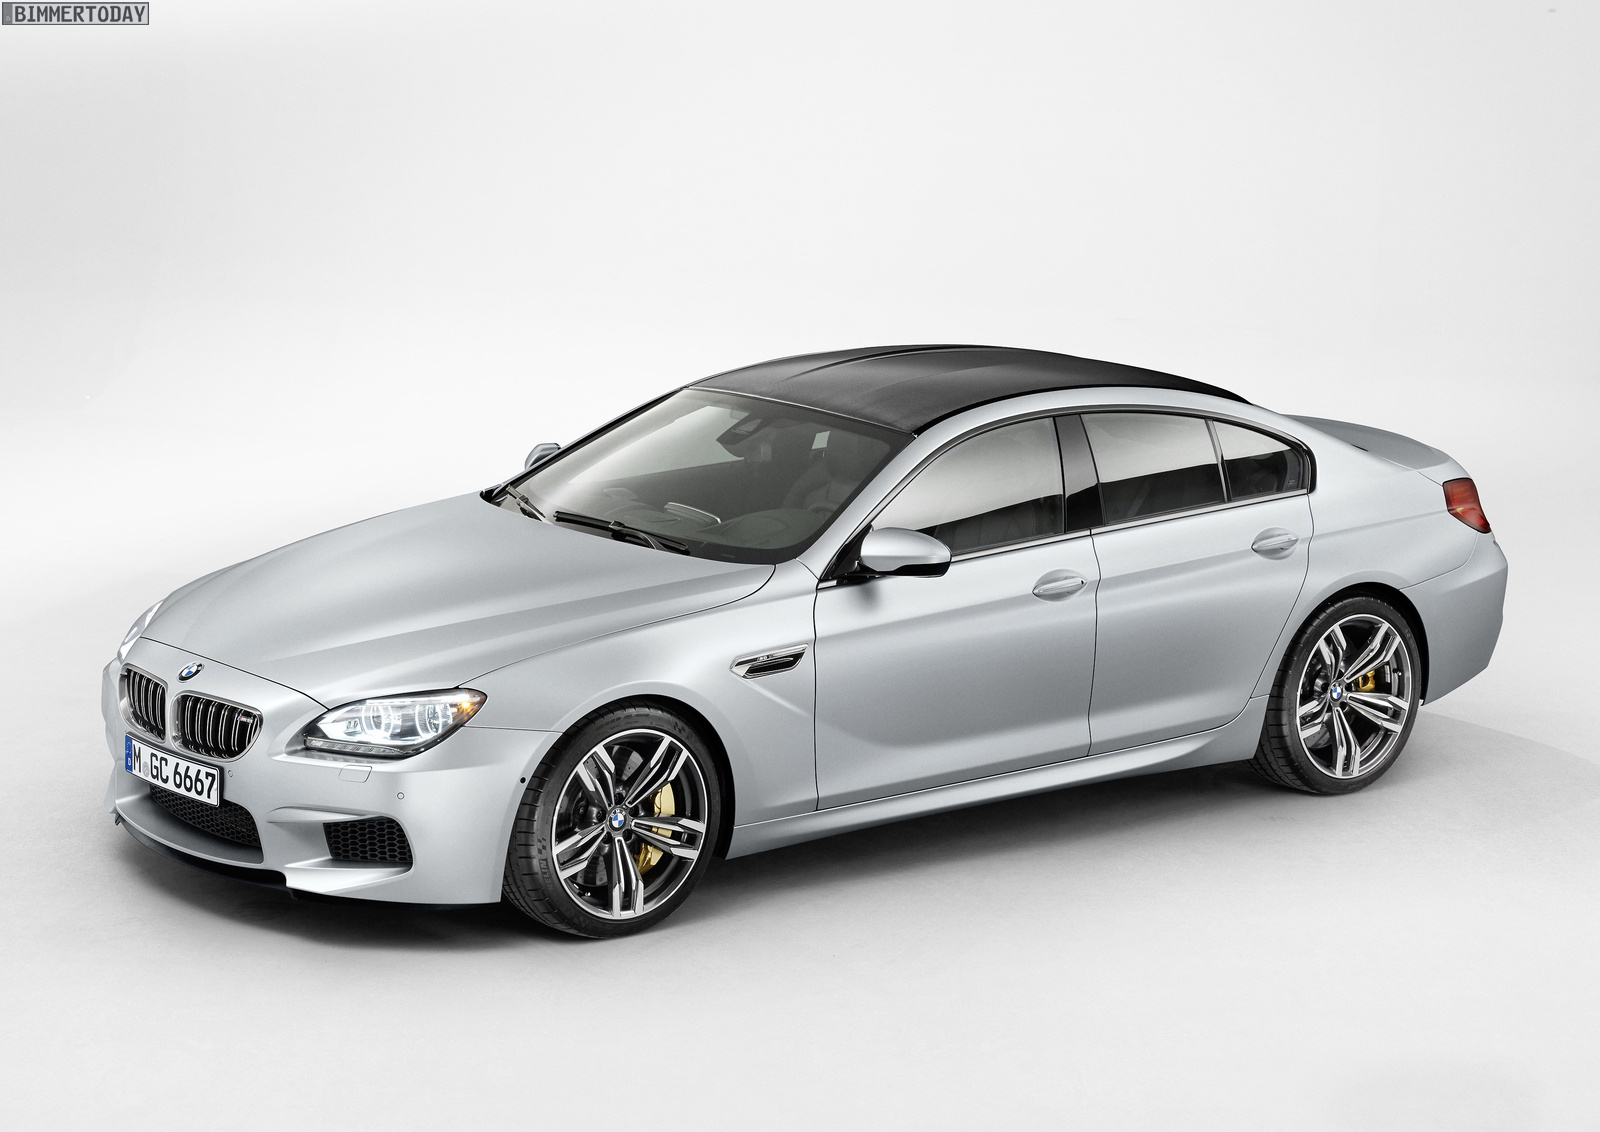 https://cdn.bimmertoday.de/wp-content/uploads/BMW-M6-Gran-Coupe-F06-2013-Exterieur-02.jpg